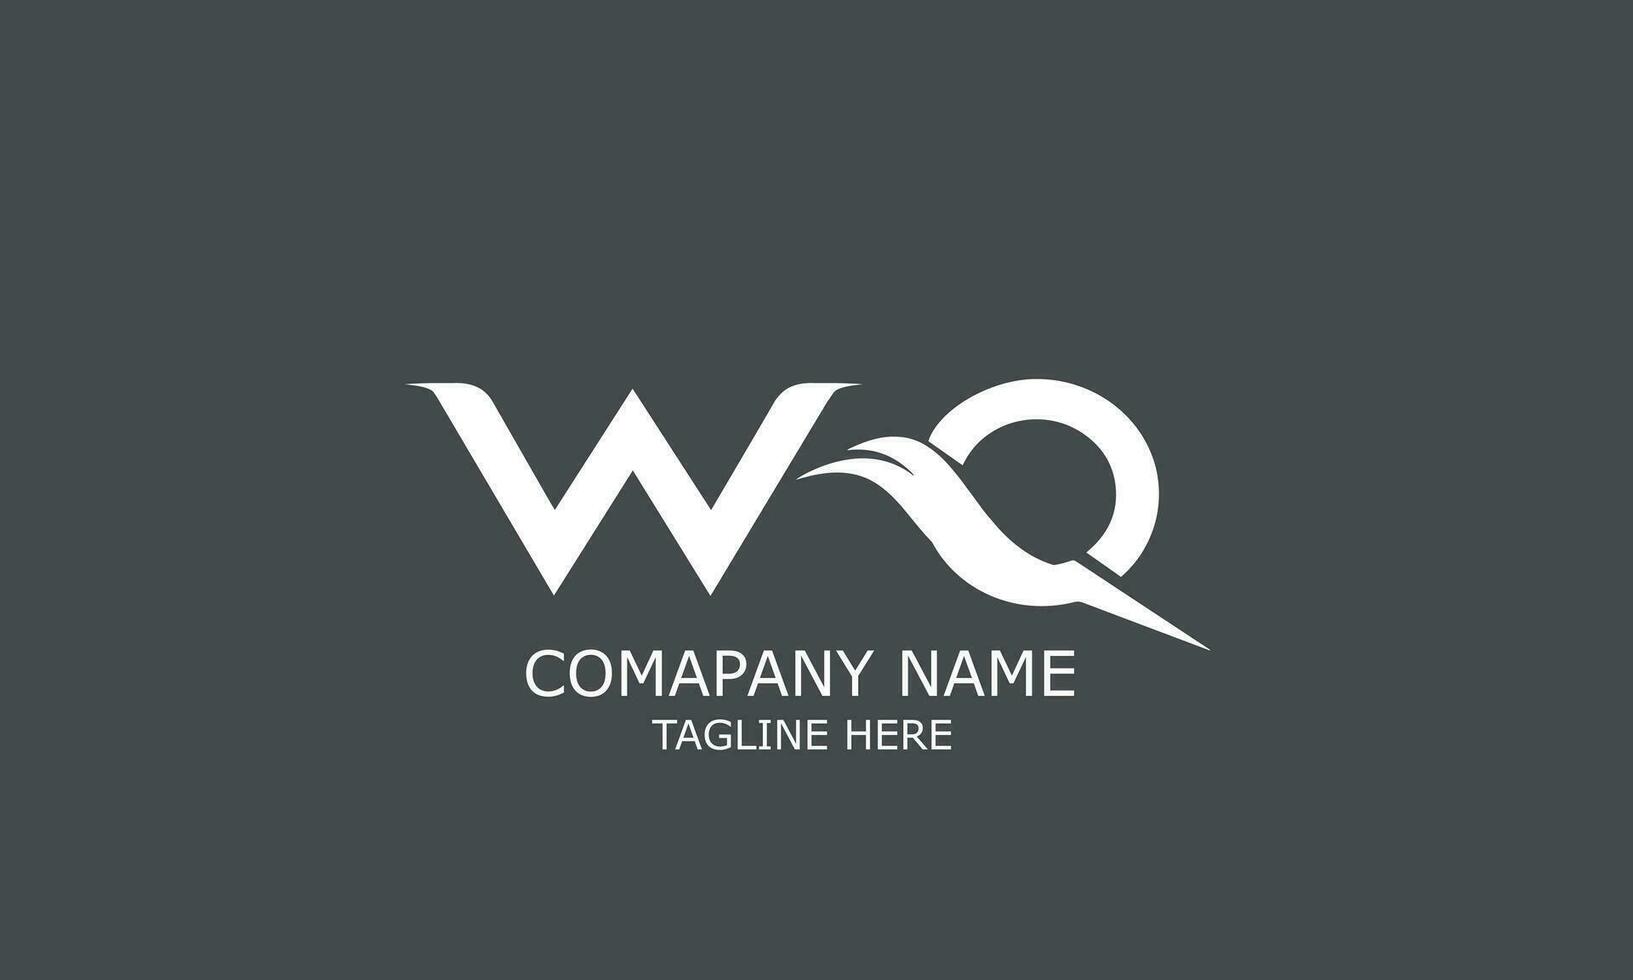 WQ QW logo design vector template